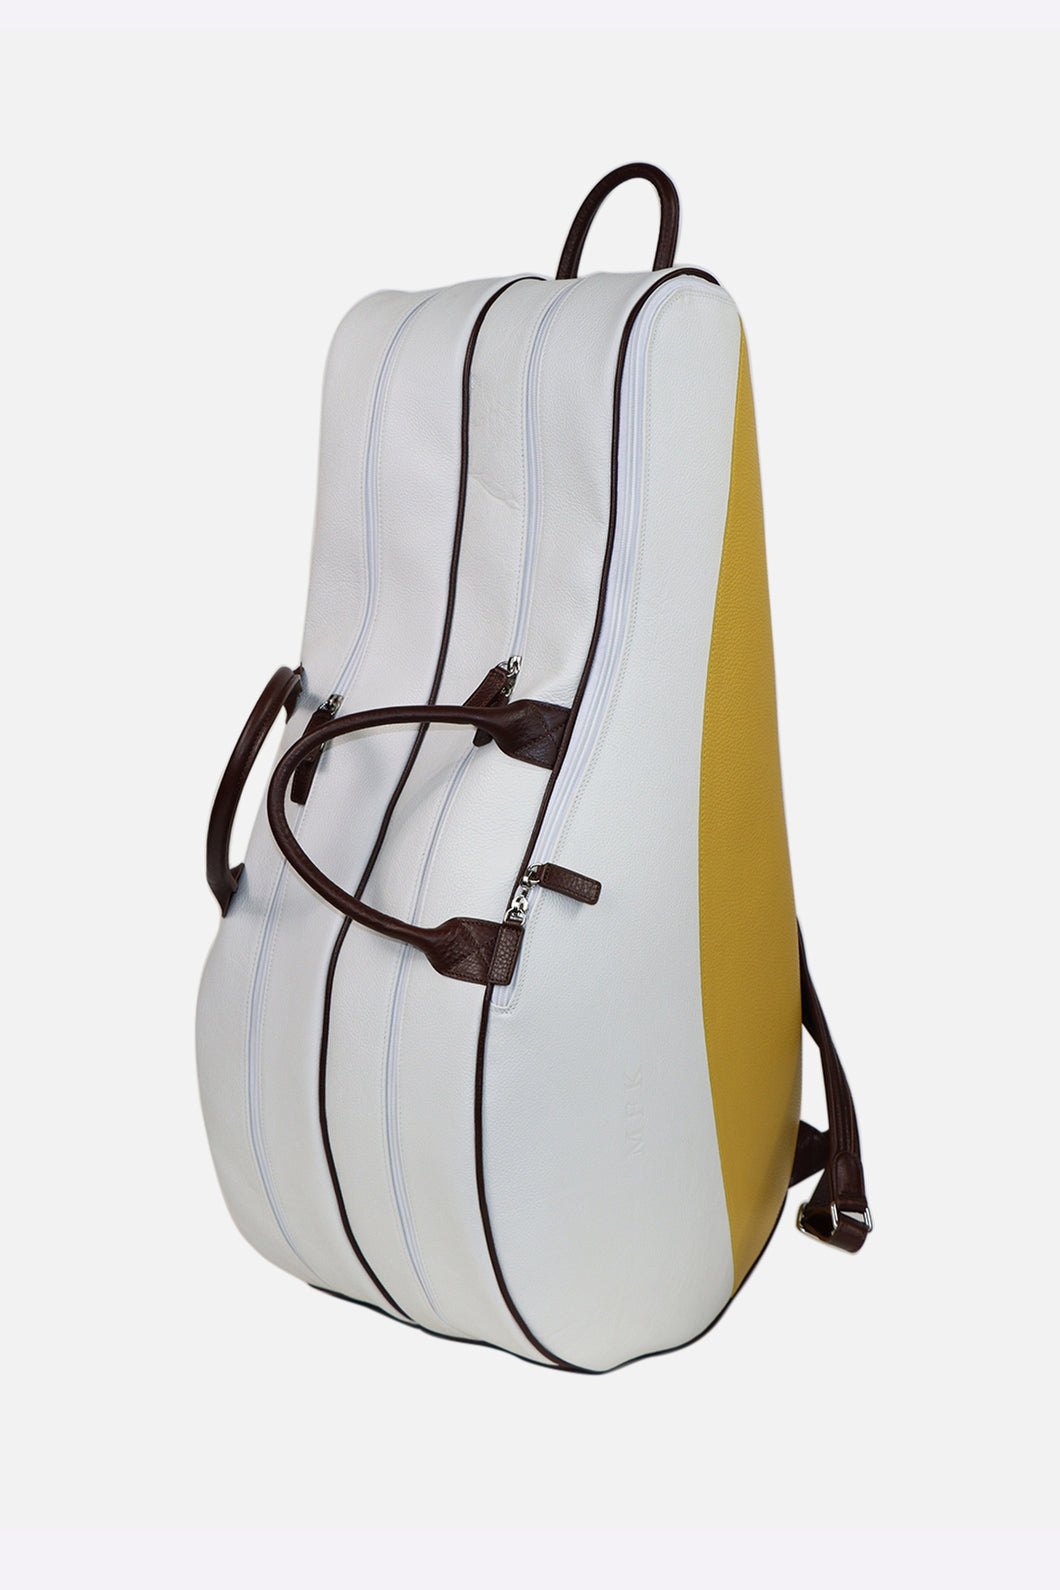 Terrida Classic Backpack Tennis Bag